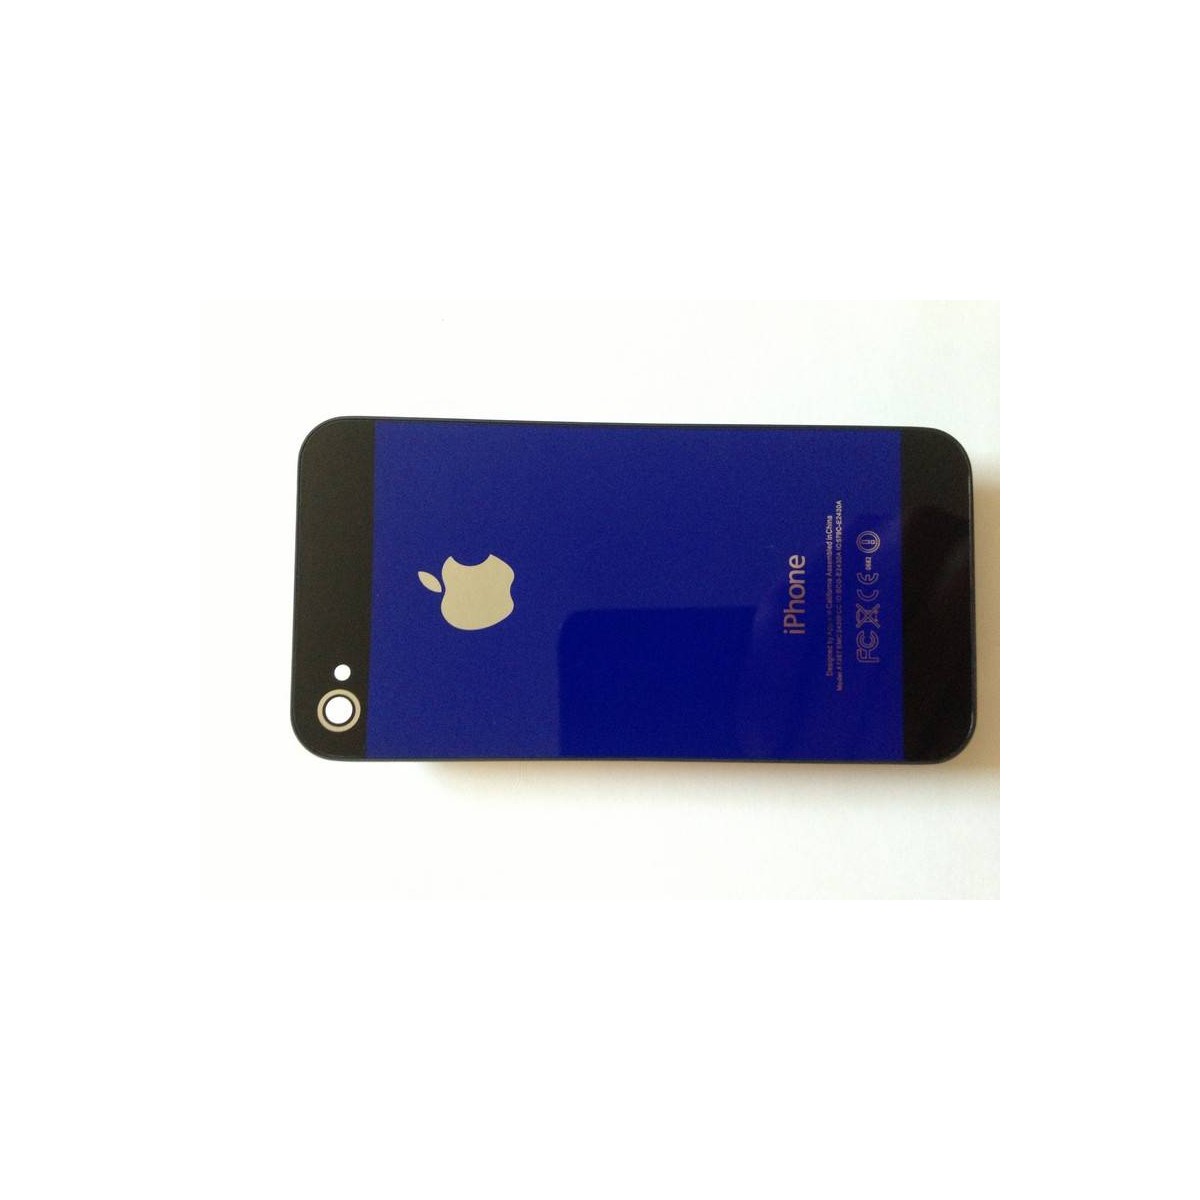 tapa iphone 4 azul com megro